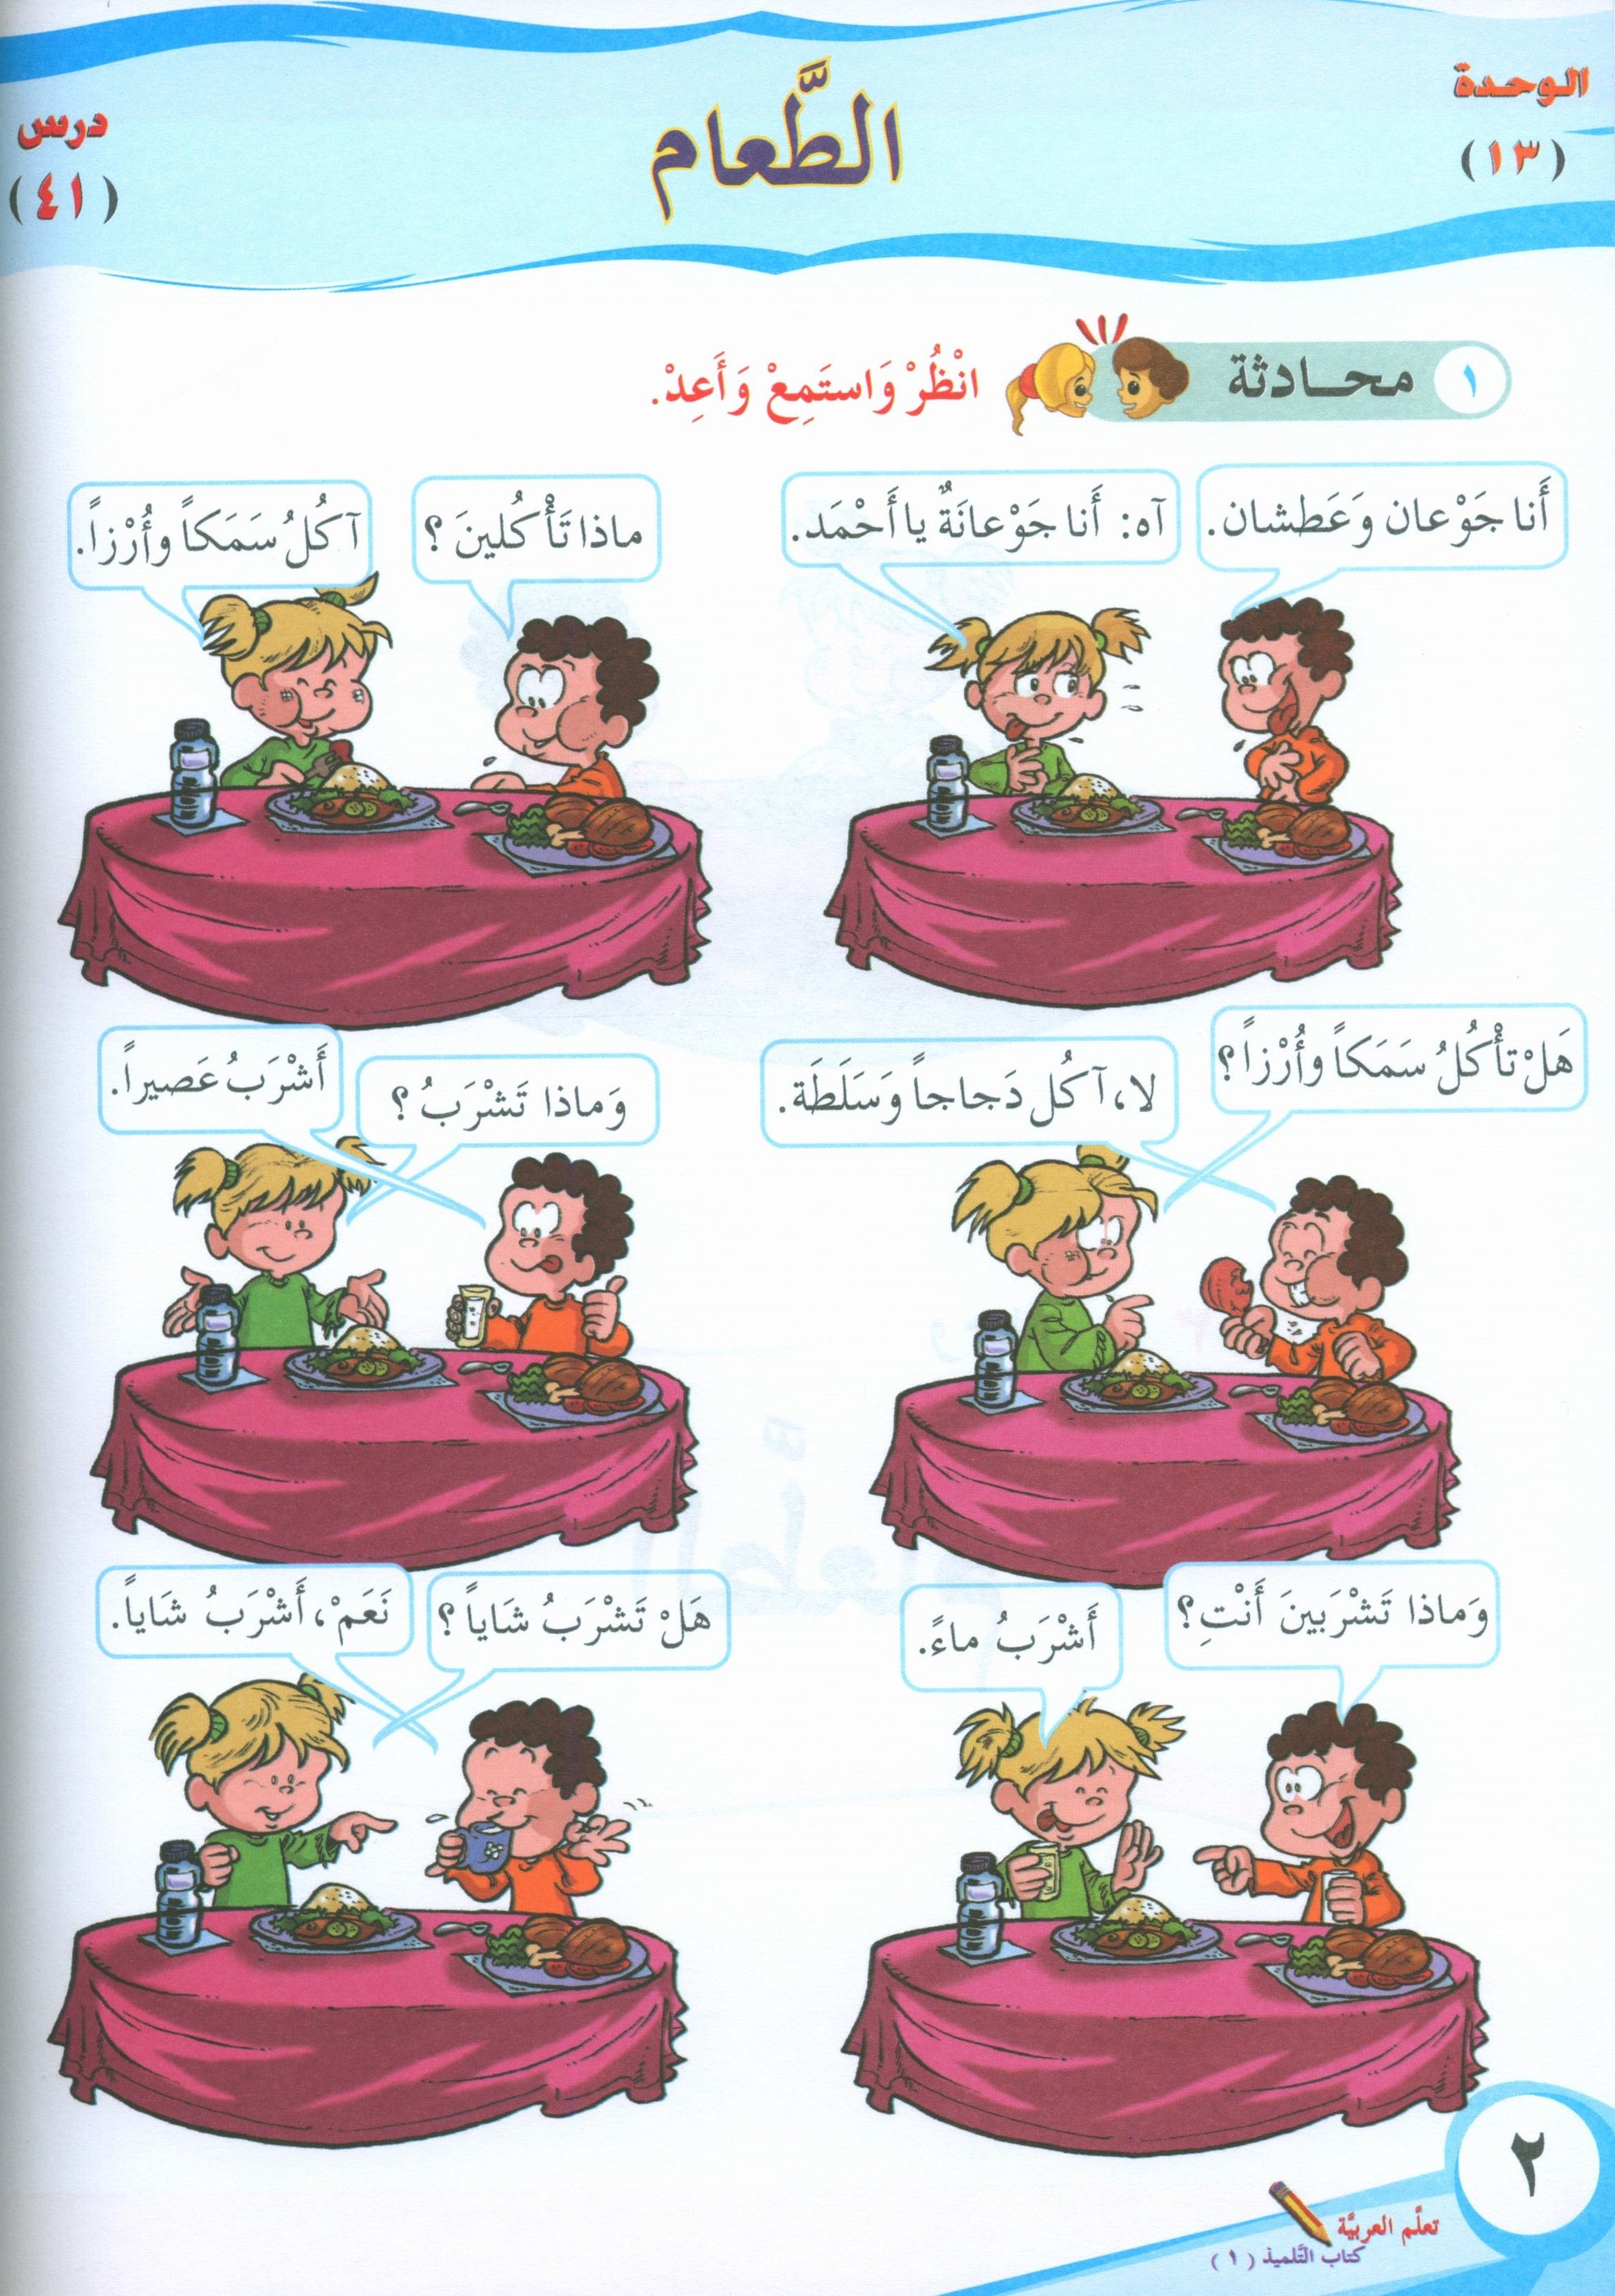 ICO Learn Arabic Textbook Level 1 Part 2 تعلم العربية كتاب التلميذ